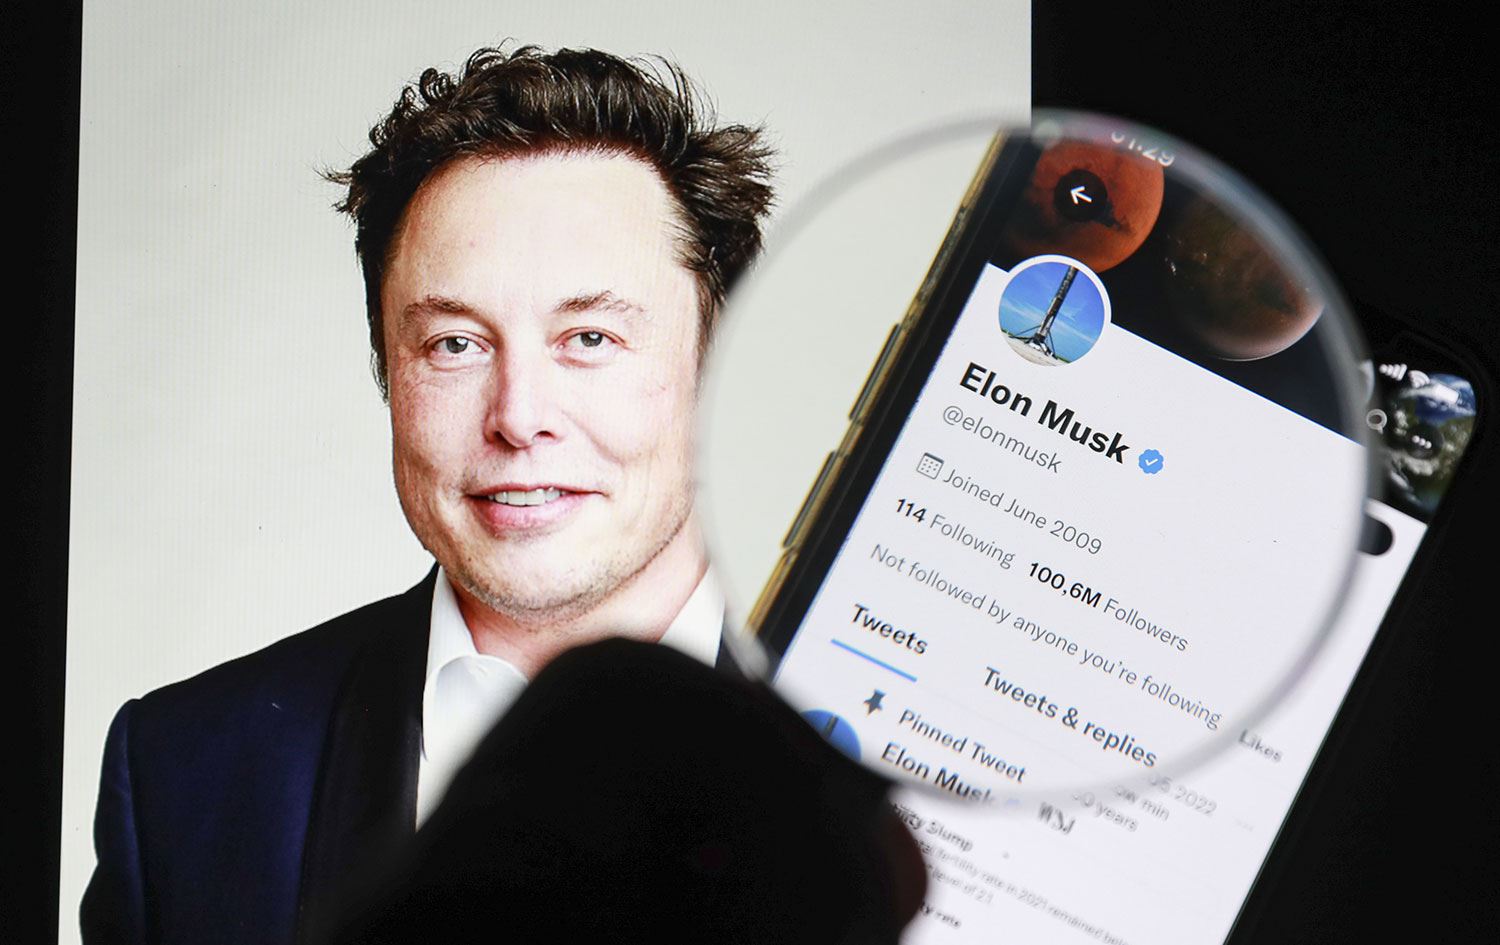 Elon Musk ın kararı sonrası Twitter a büyük şok!